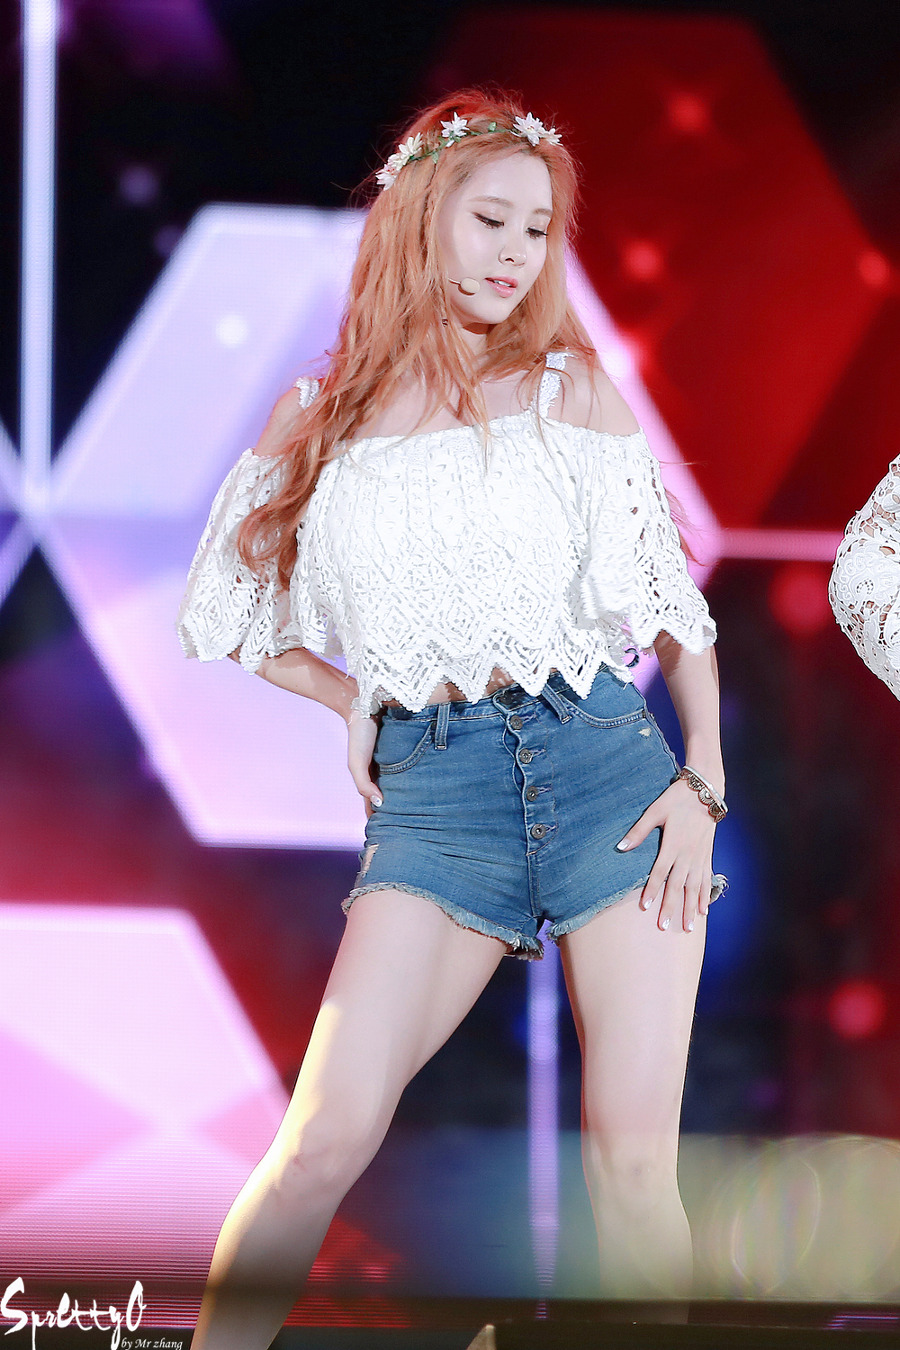 [PIC][27-07-2015]SNSD tham dự "MBC Music Core Summer Festival" tại Ulsan vào tối nay 227A804555B9D9AF13E375